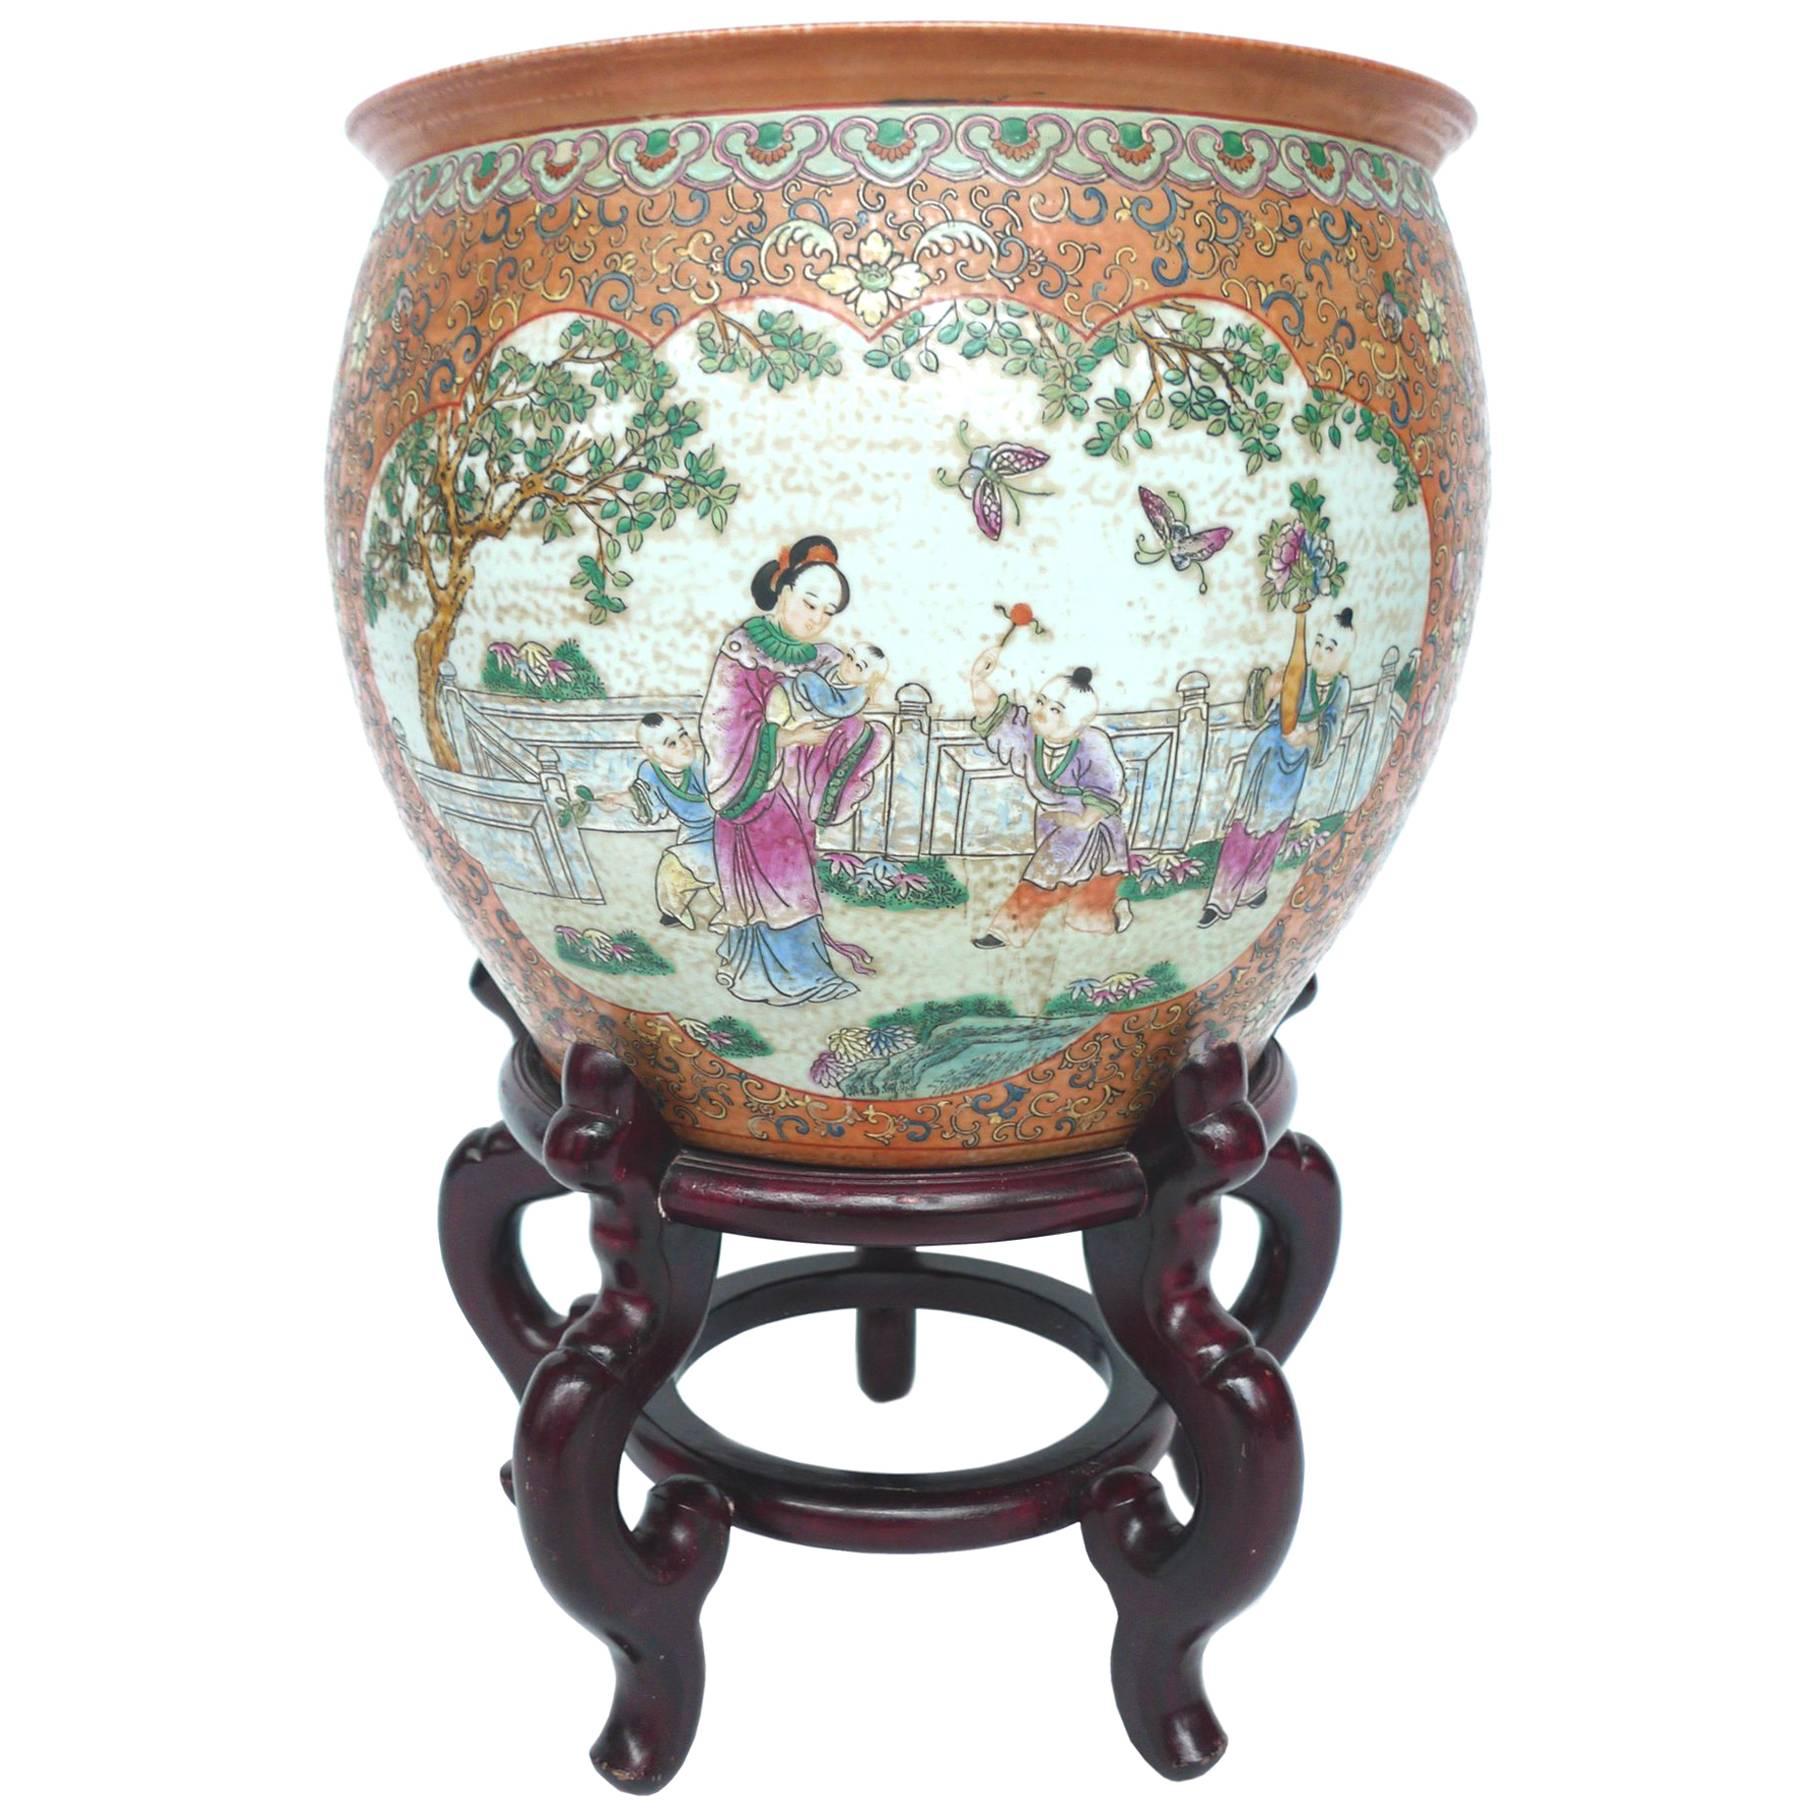 20th Century Chinese Hand-Painted Ceramic Fishbowl